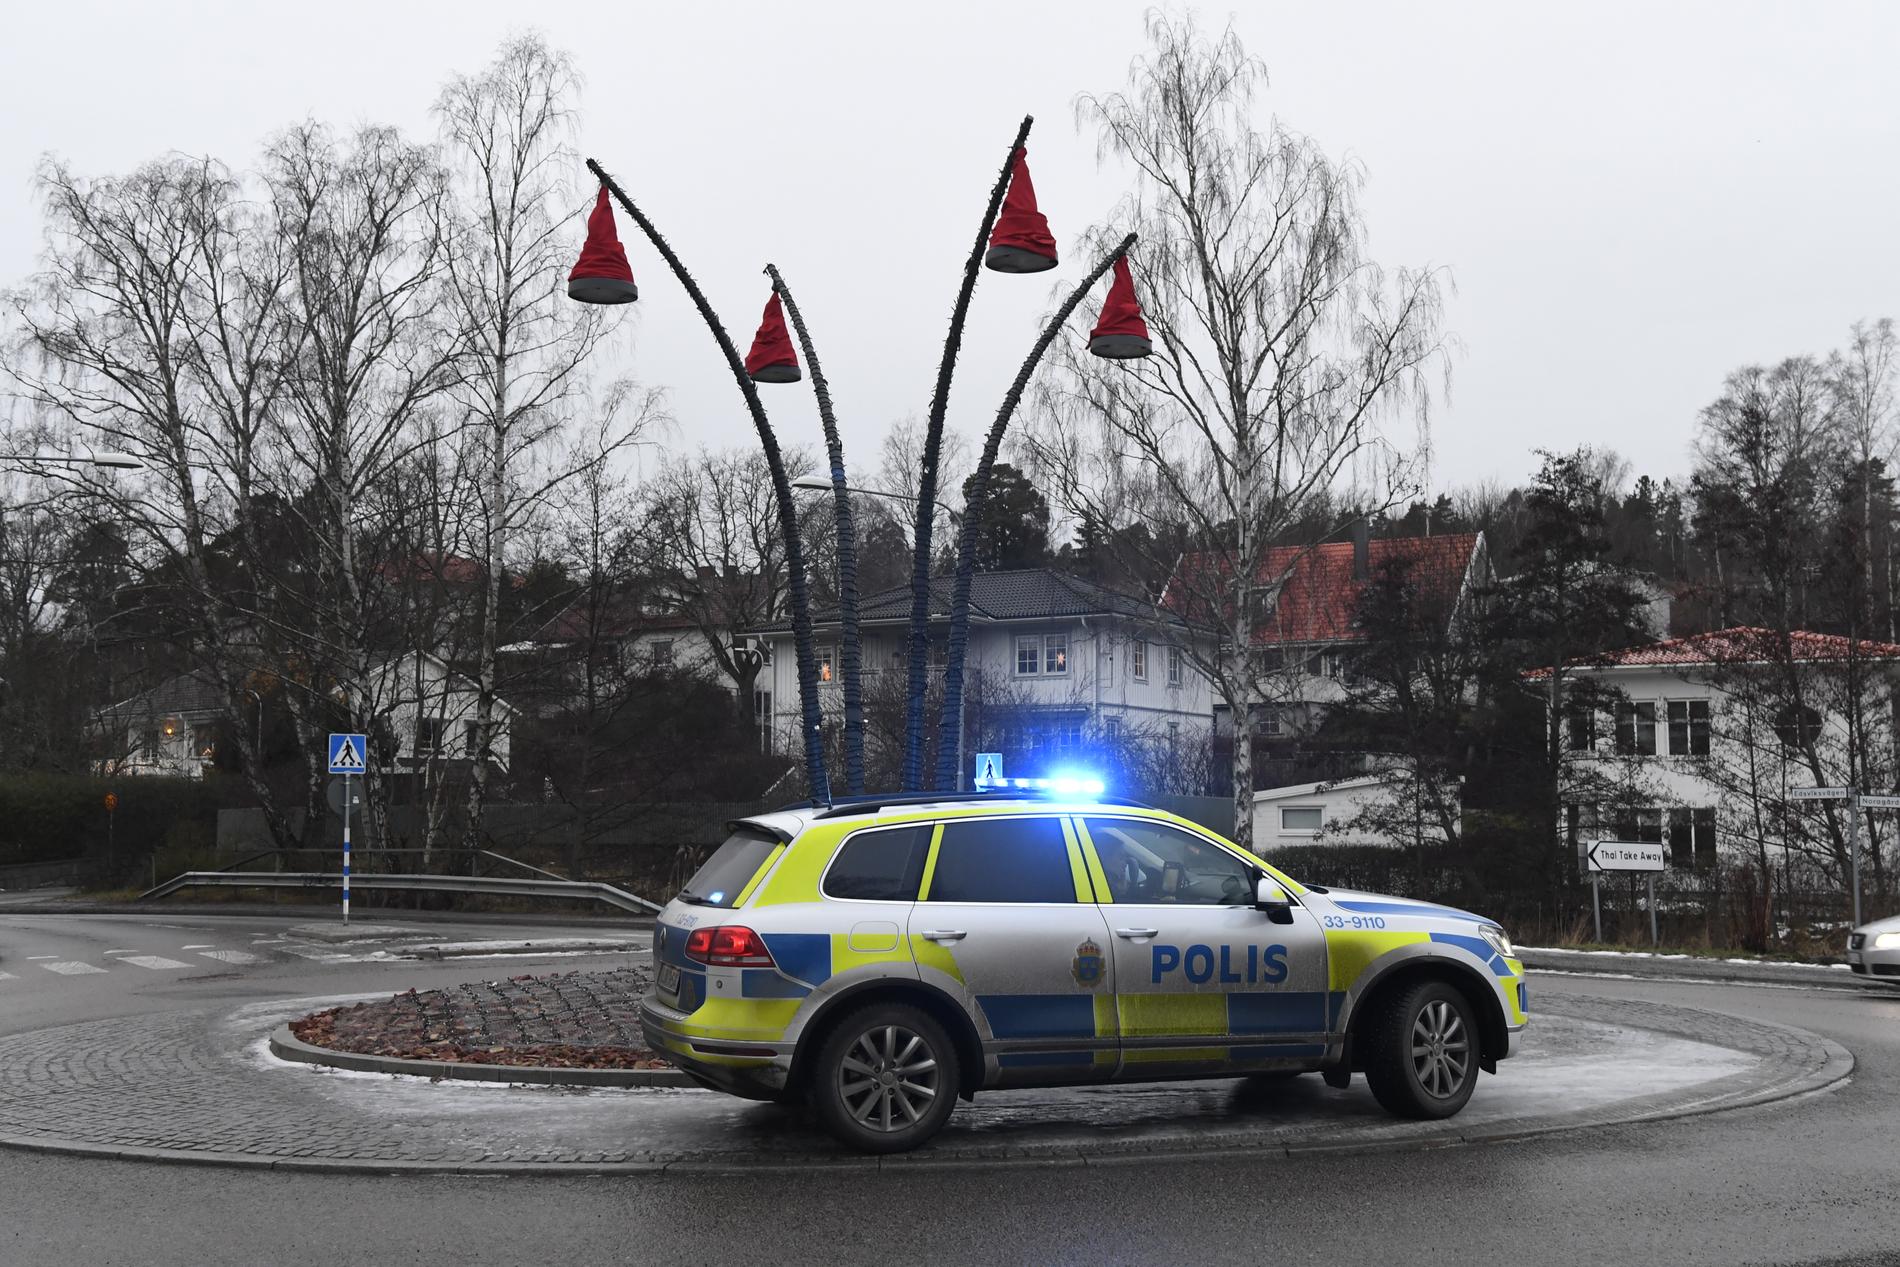 En person blev i dag rånad i sin bostad Danderyd, norr om Stockholm. Polisen har just nu en pågående insats i området och letar efter gärningsmannen.